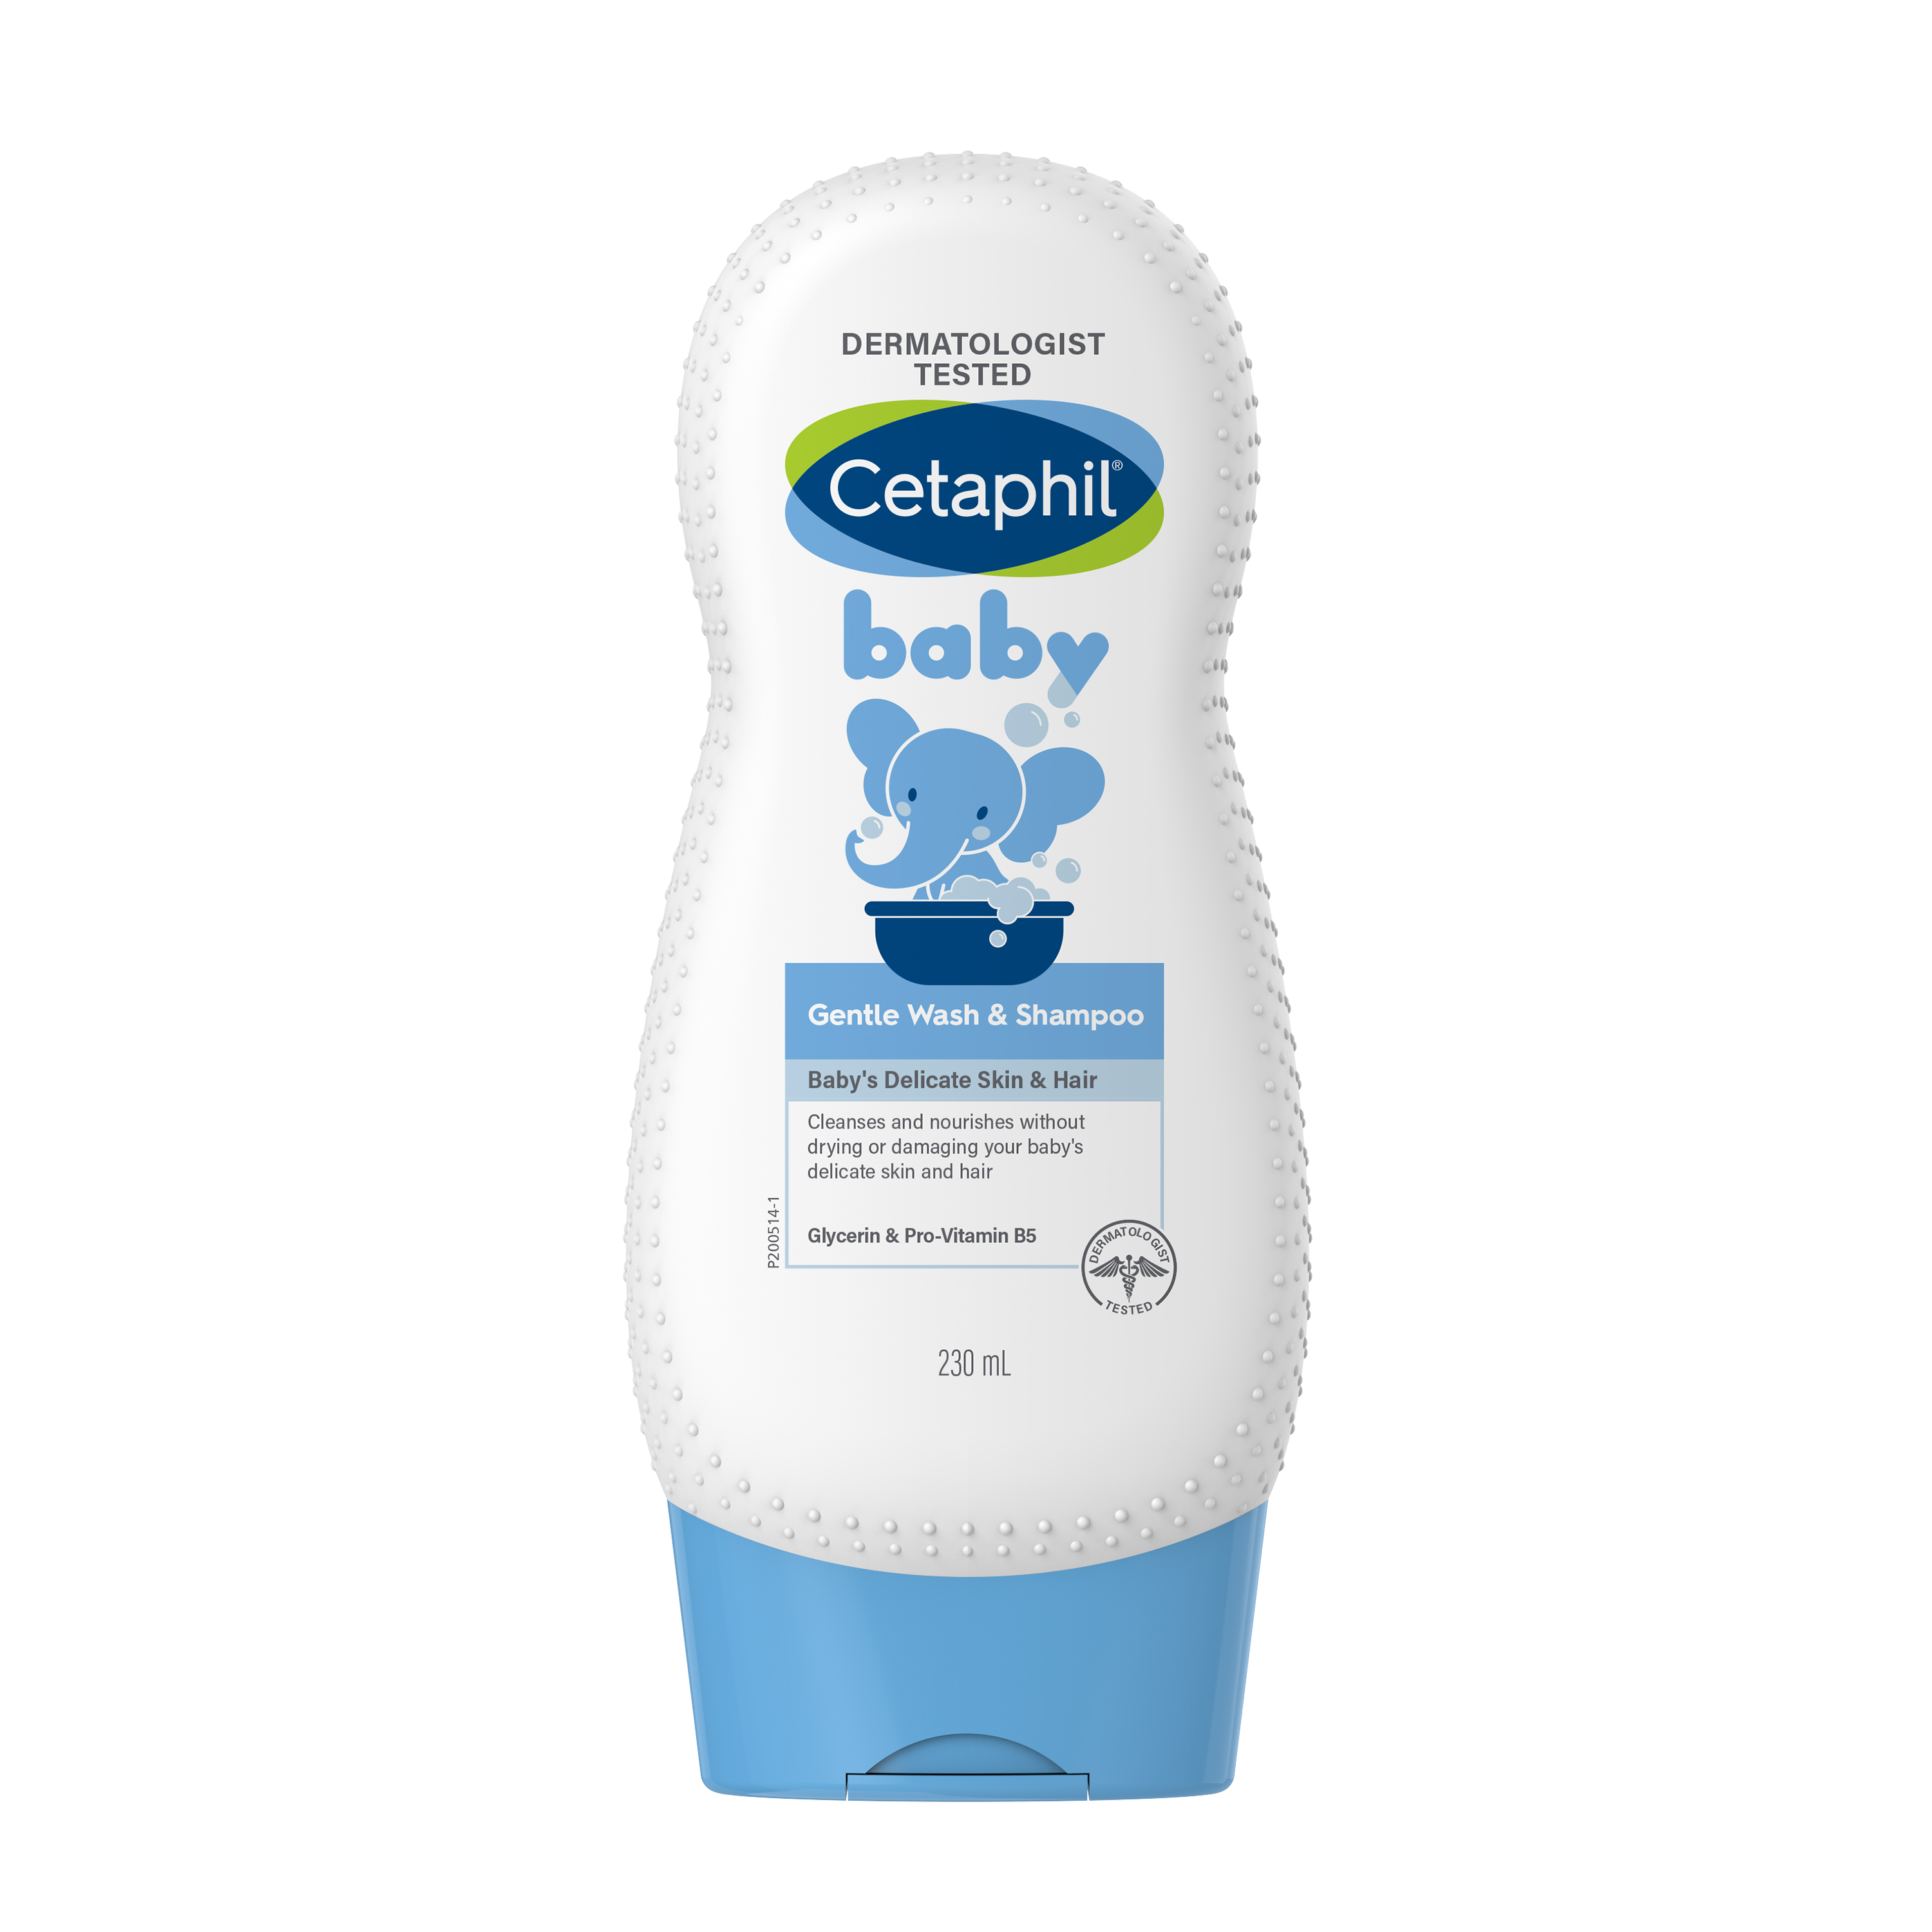 Baby Gentle Wash & Shampoo